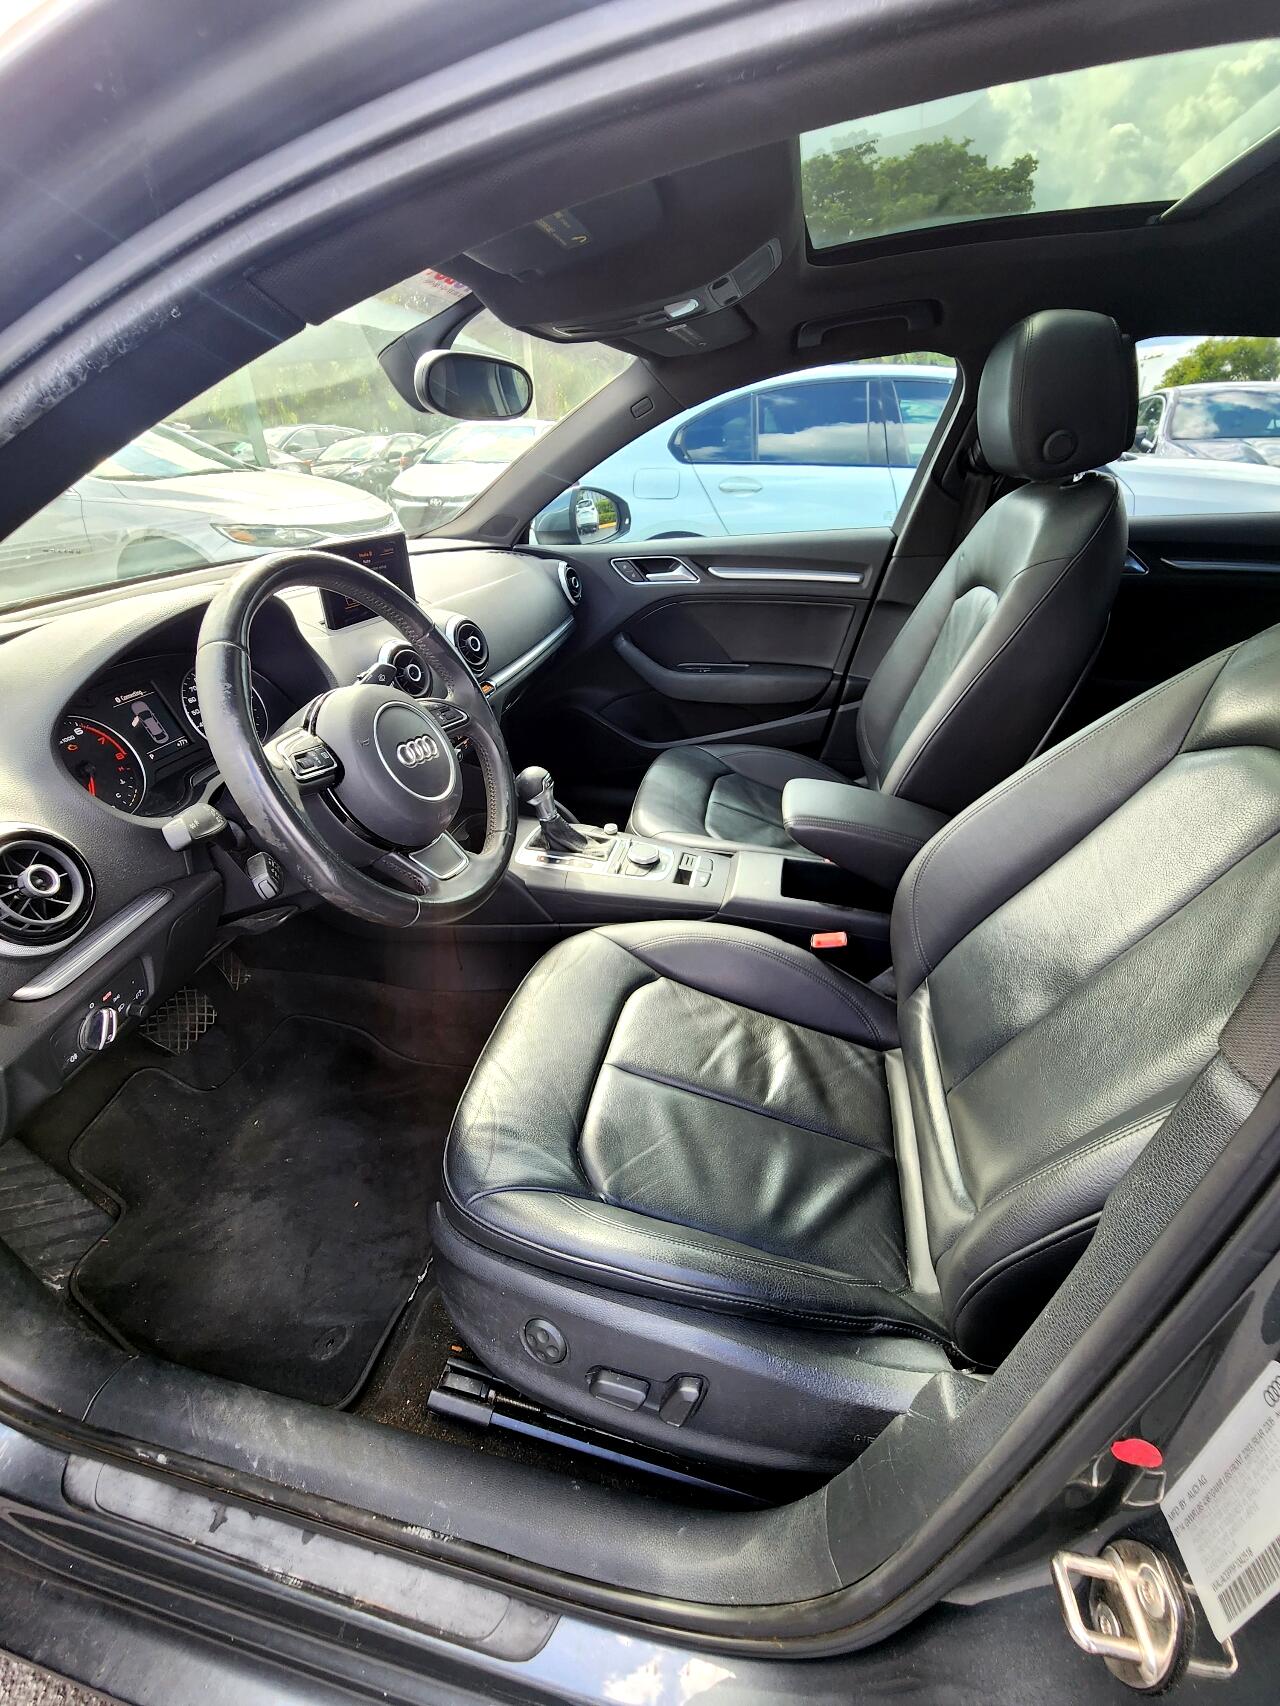 2015 AUDI A3 Sedan - $14,999